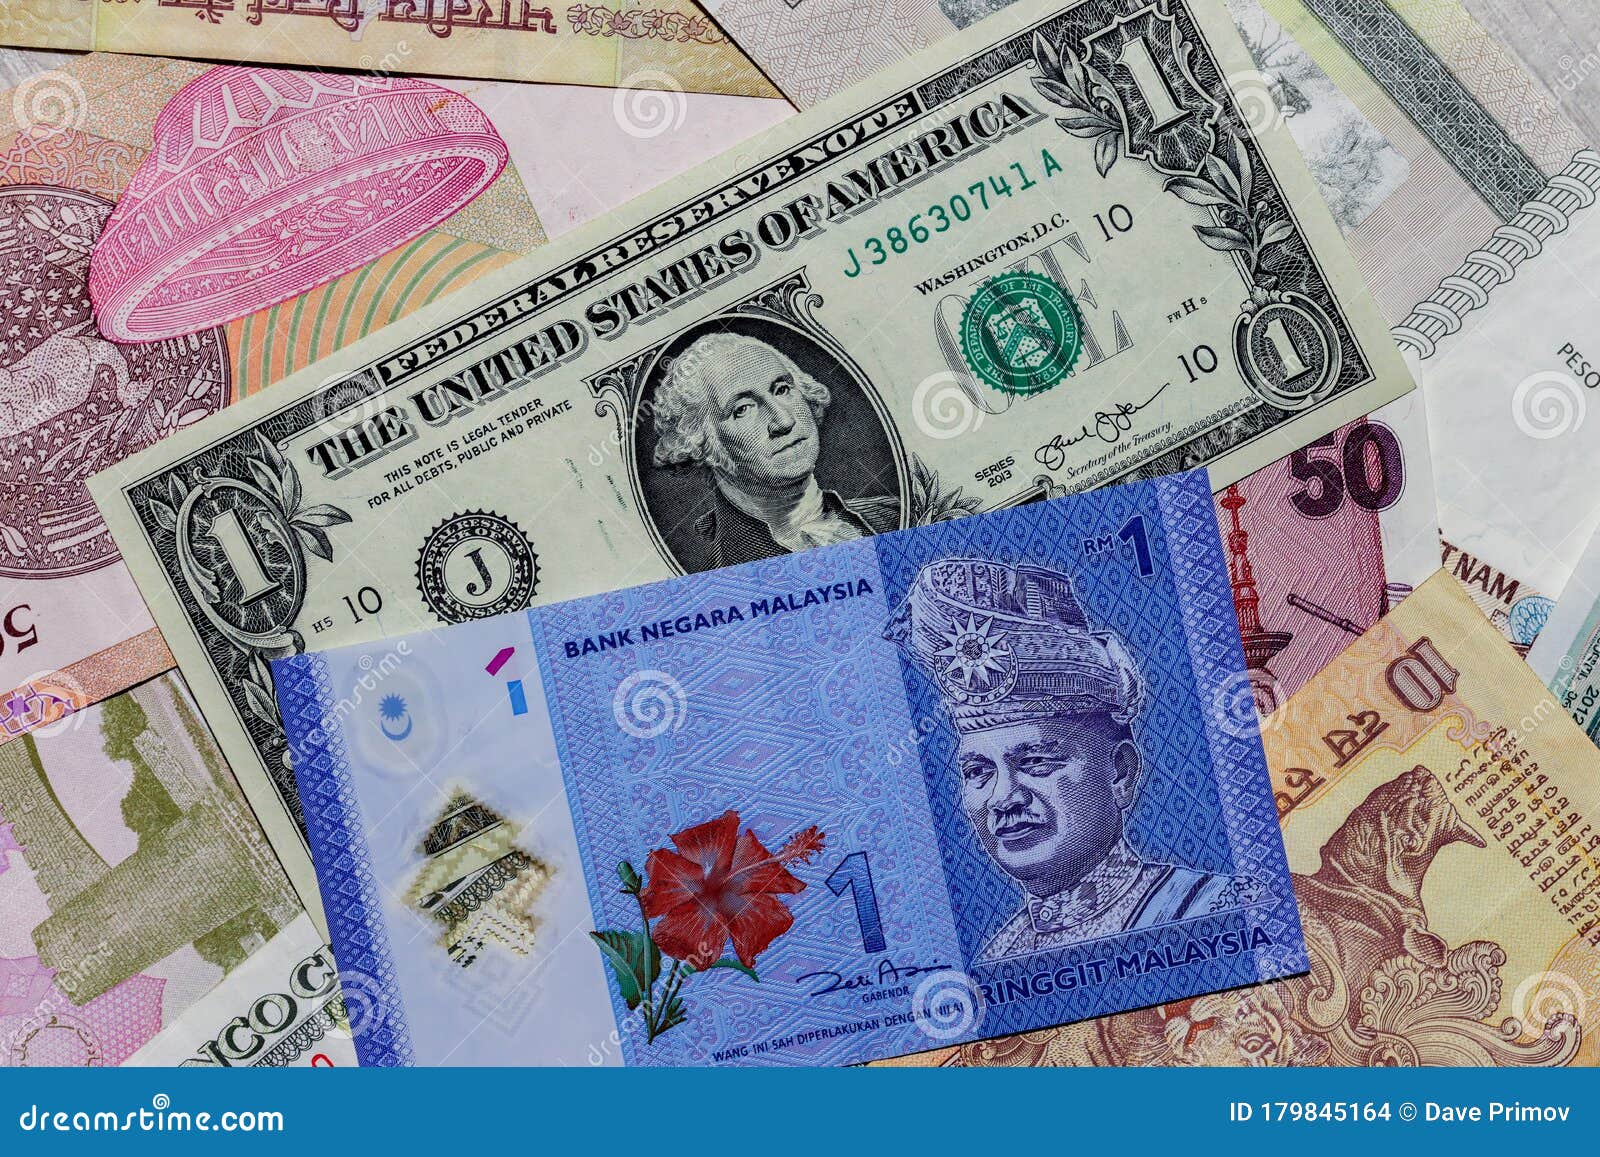 Pakistani rupees today 1 ringgit malaysia 1 Pakistani